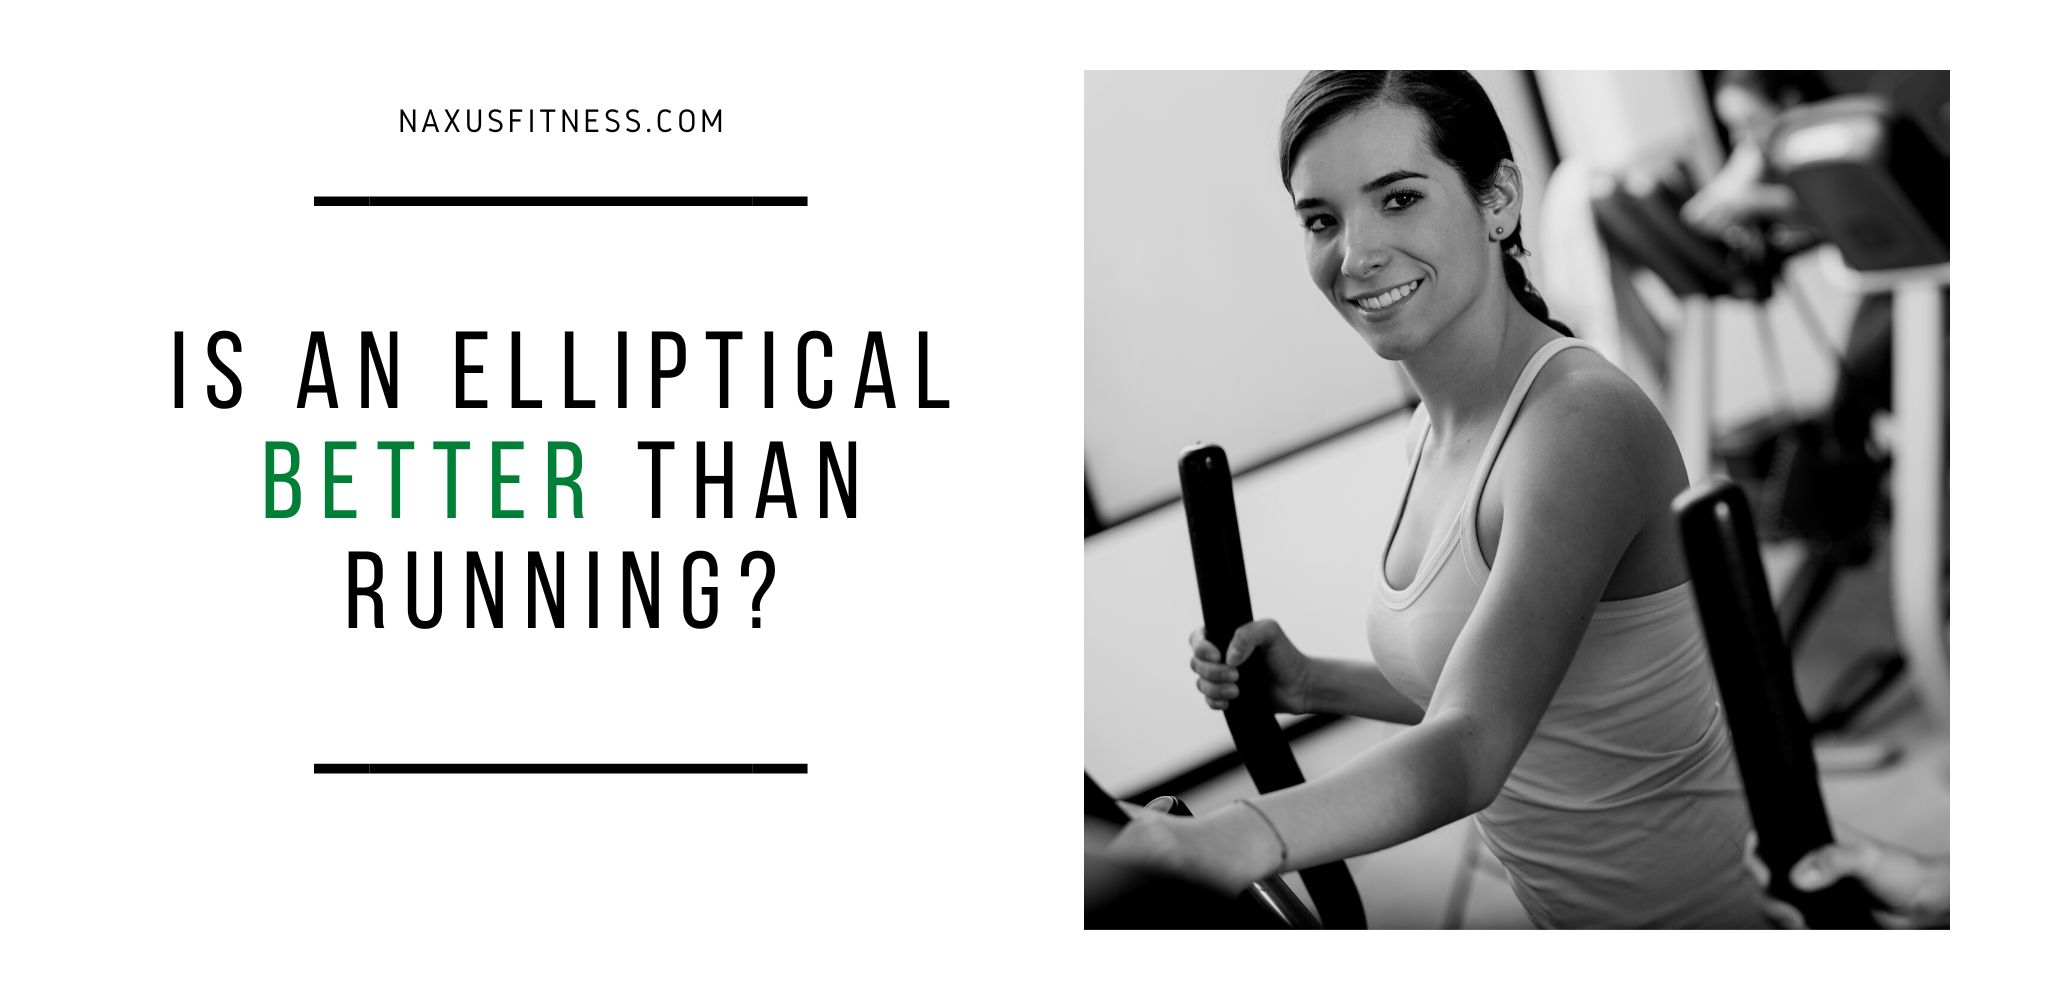 Is an elliptical better than running?